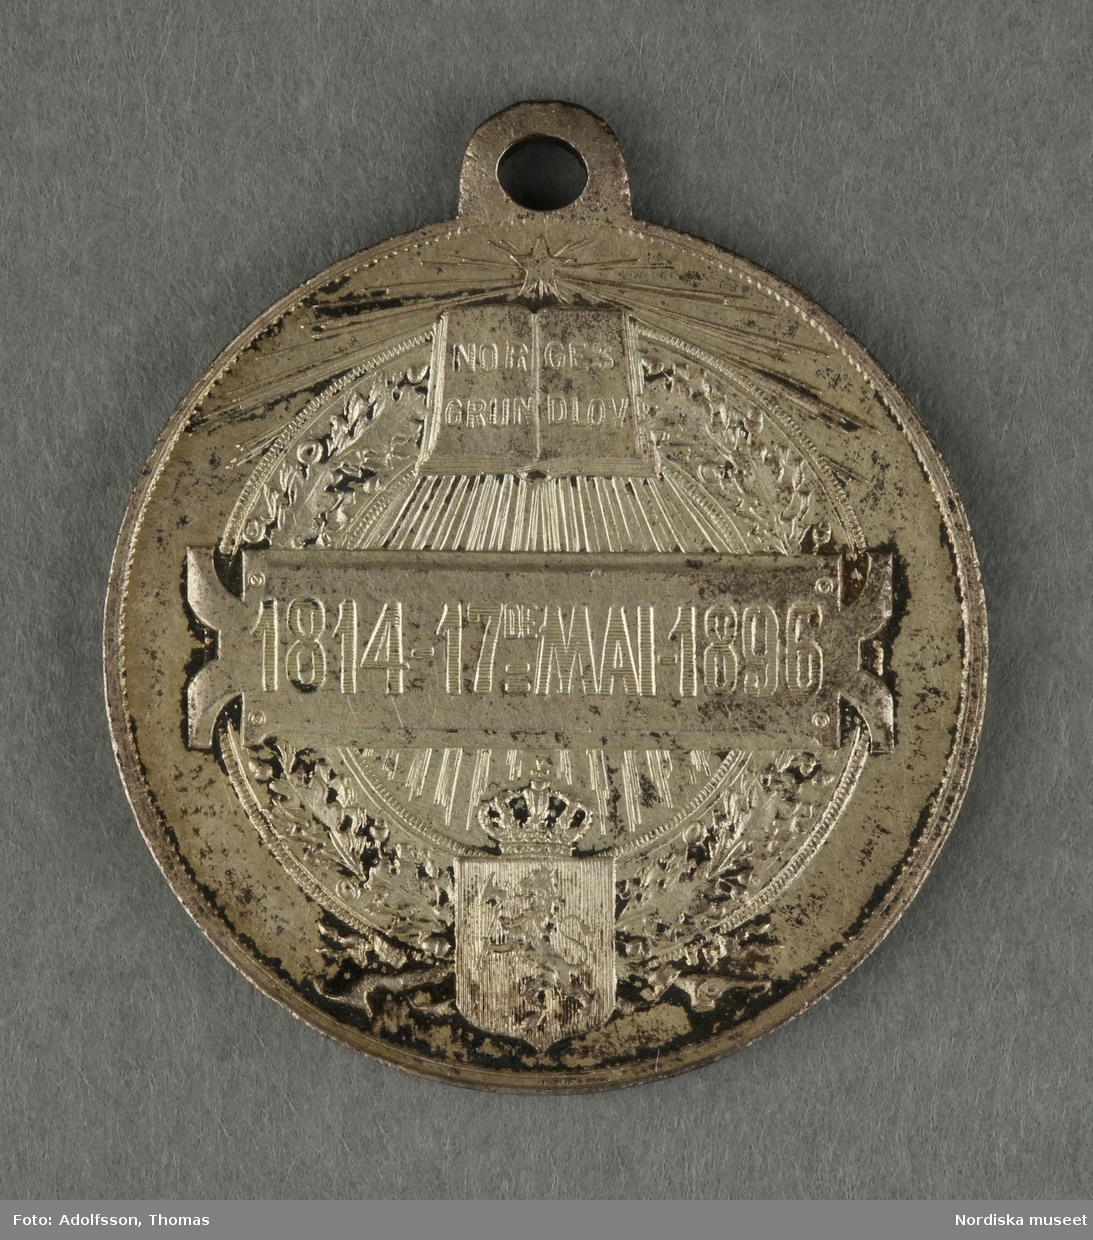 Huvudliggaren:
"a-y, Minnesmedaljer, norska, över den 17 maj; av aluminium (1 av vit metall) 24 st. från åren 1884-1907.
Gåva 28/5 1907. Läffler, Fritz, professor, Djursholm."